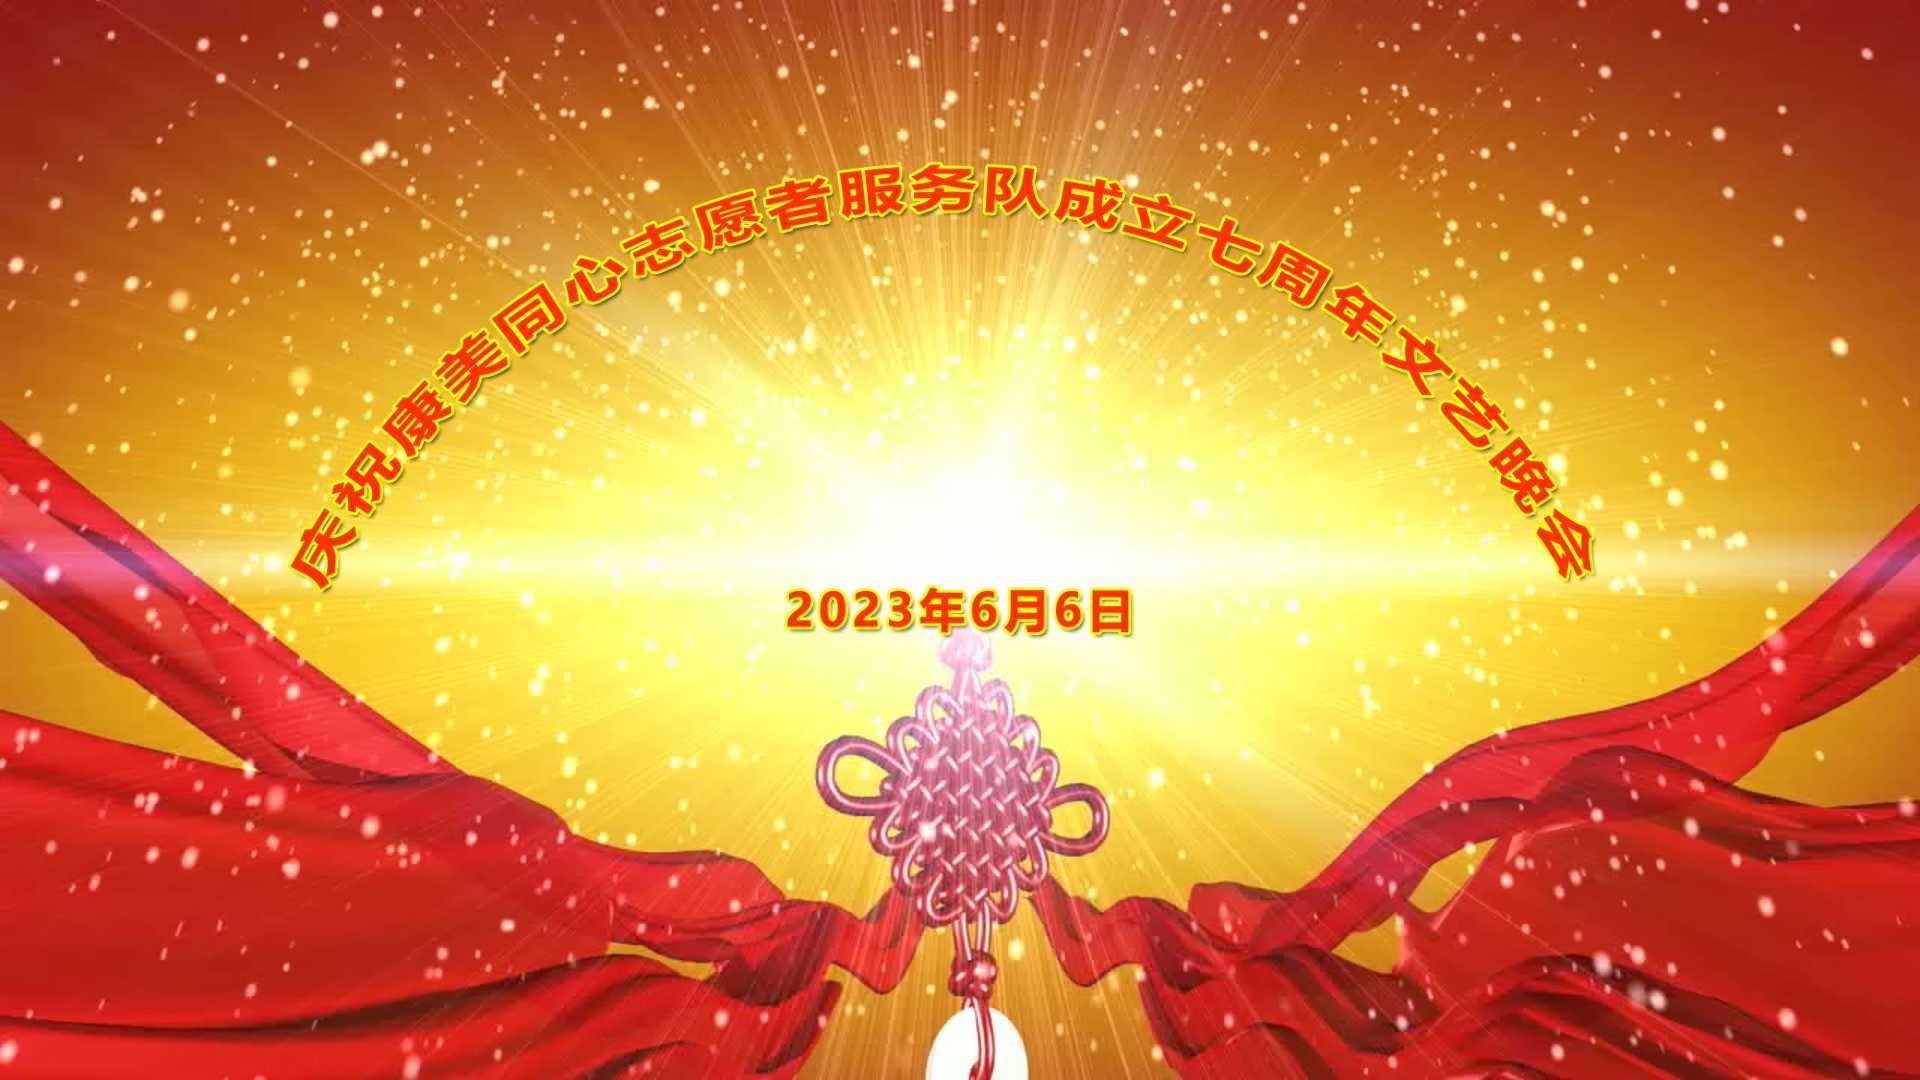 康美同心志愿者服务队成立七周年庆典文艺晚会 2023.6.6